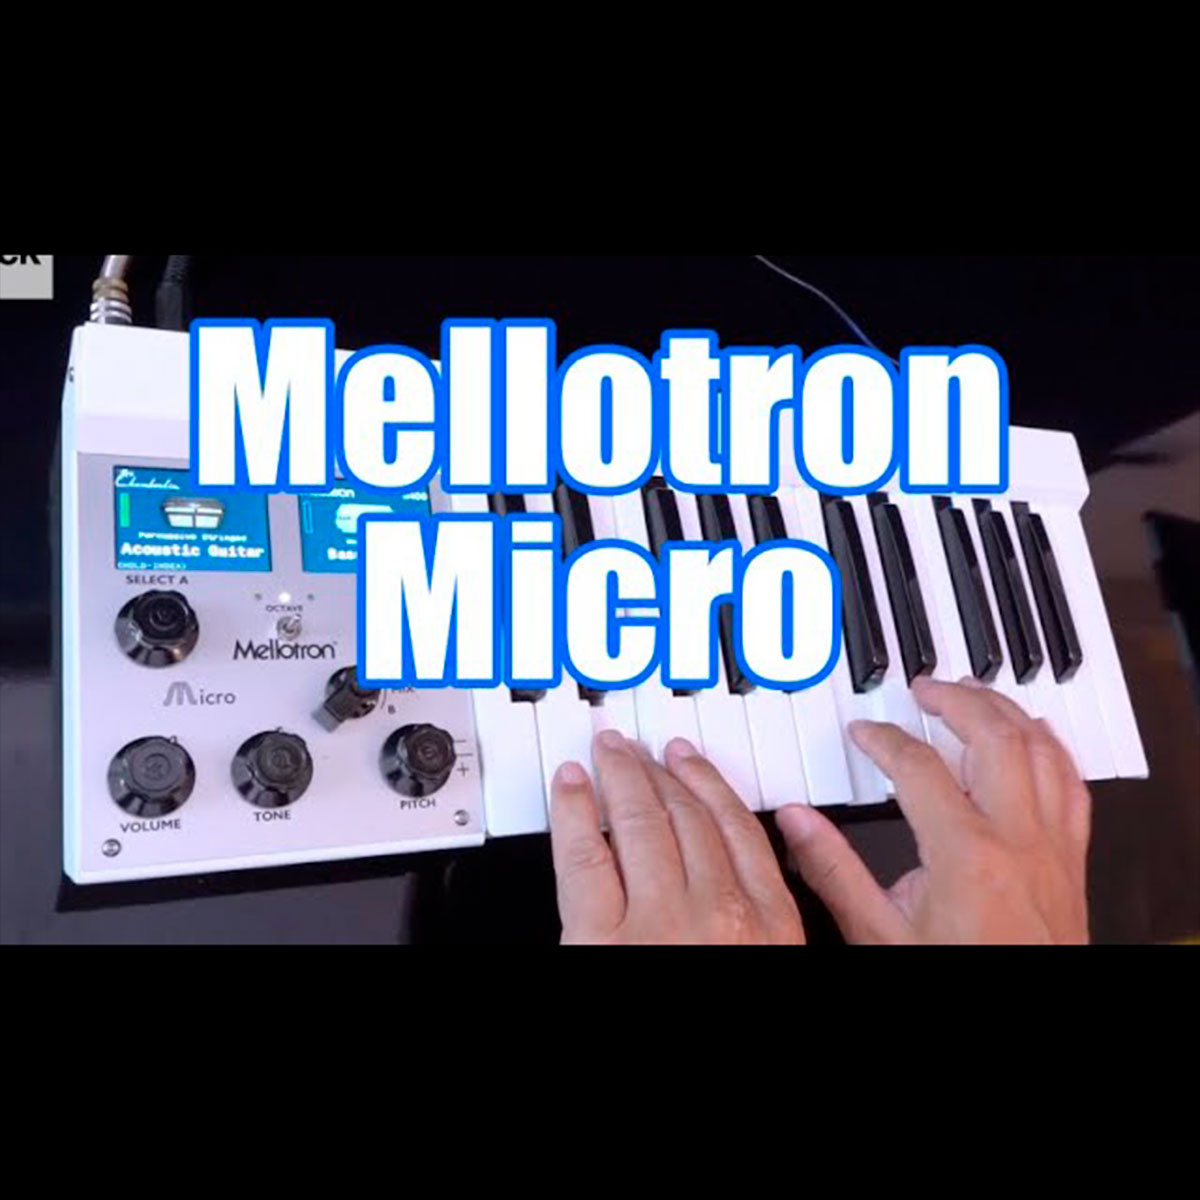 氏家克典氏による Mellotron Micro のデモ&レビュー動画が公開 